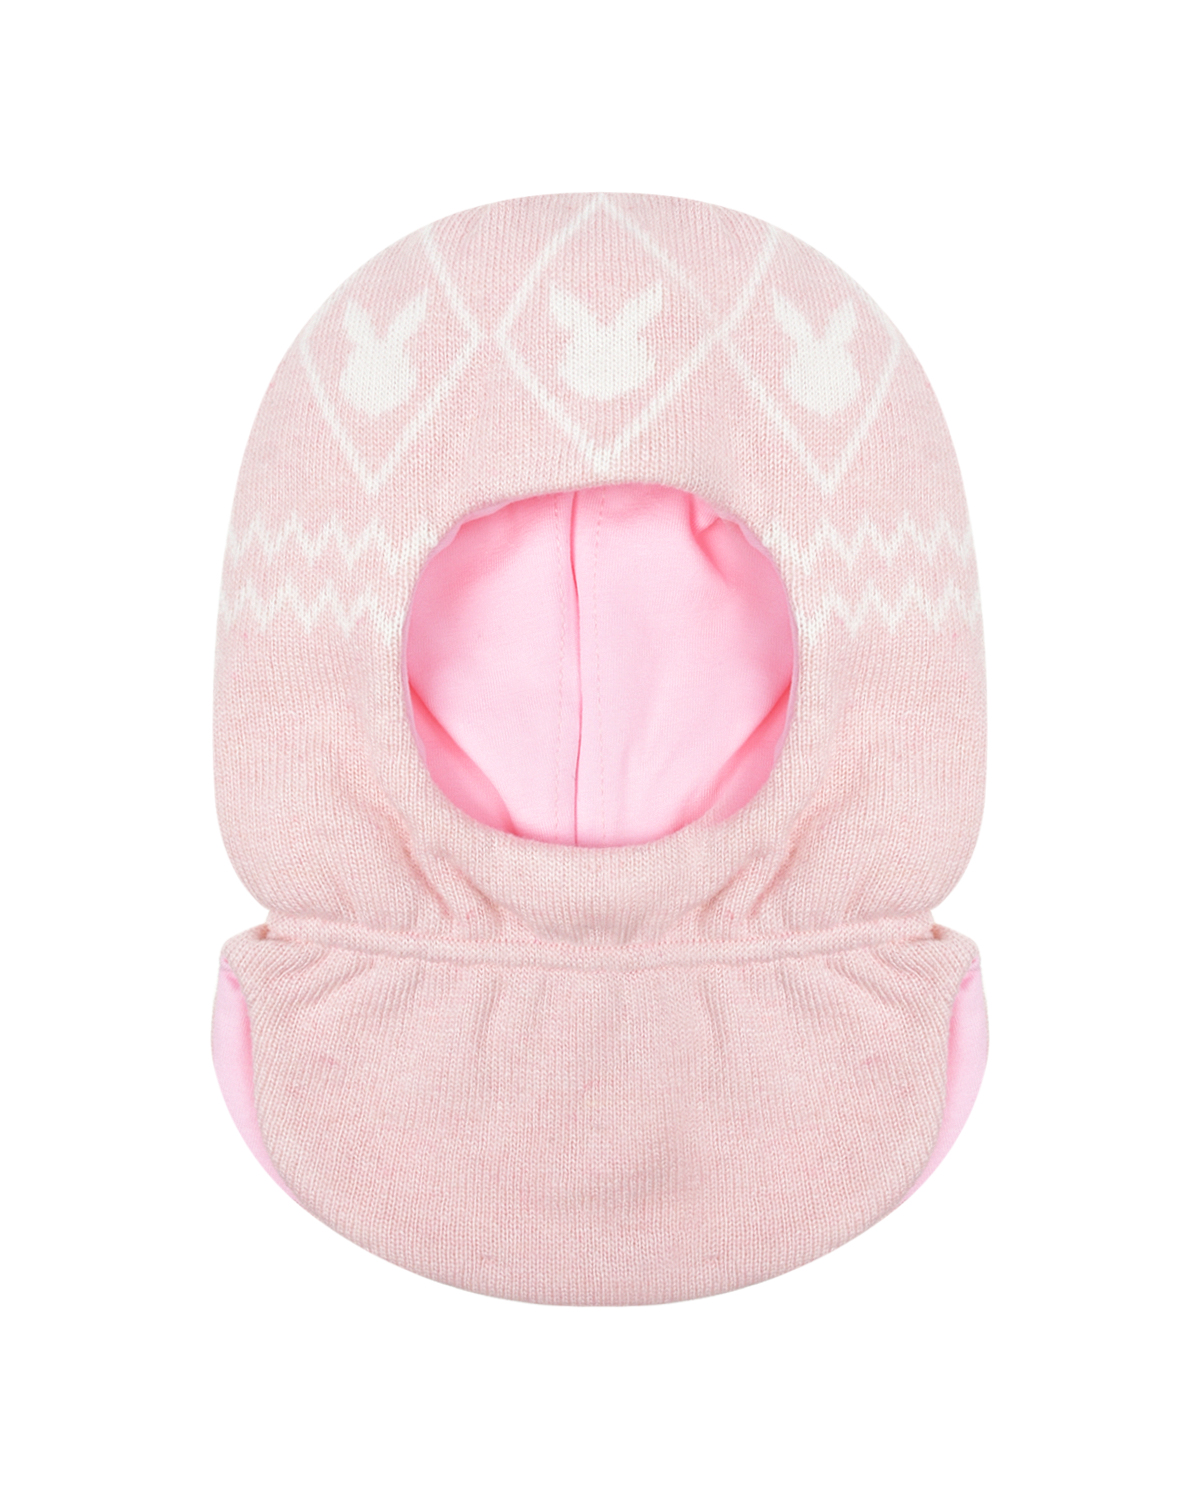 Розовая шапка-шлем с принтом "белые зайцы" Chobi детская, размер 49, цвет розовый - фото 1